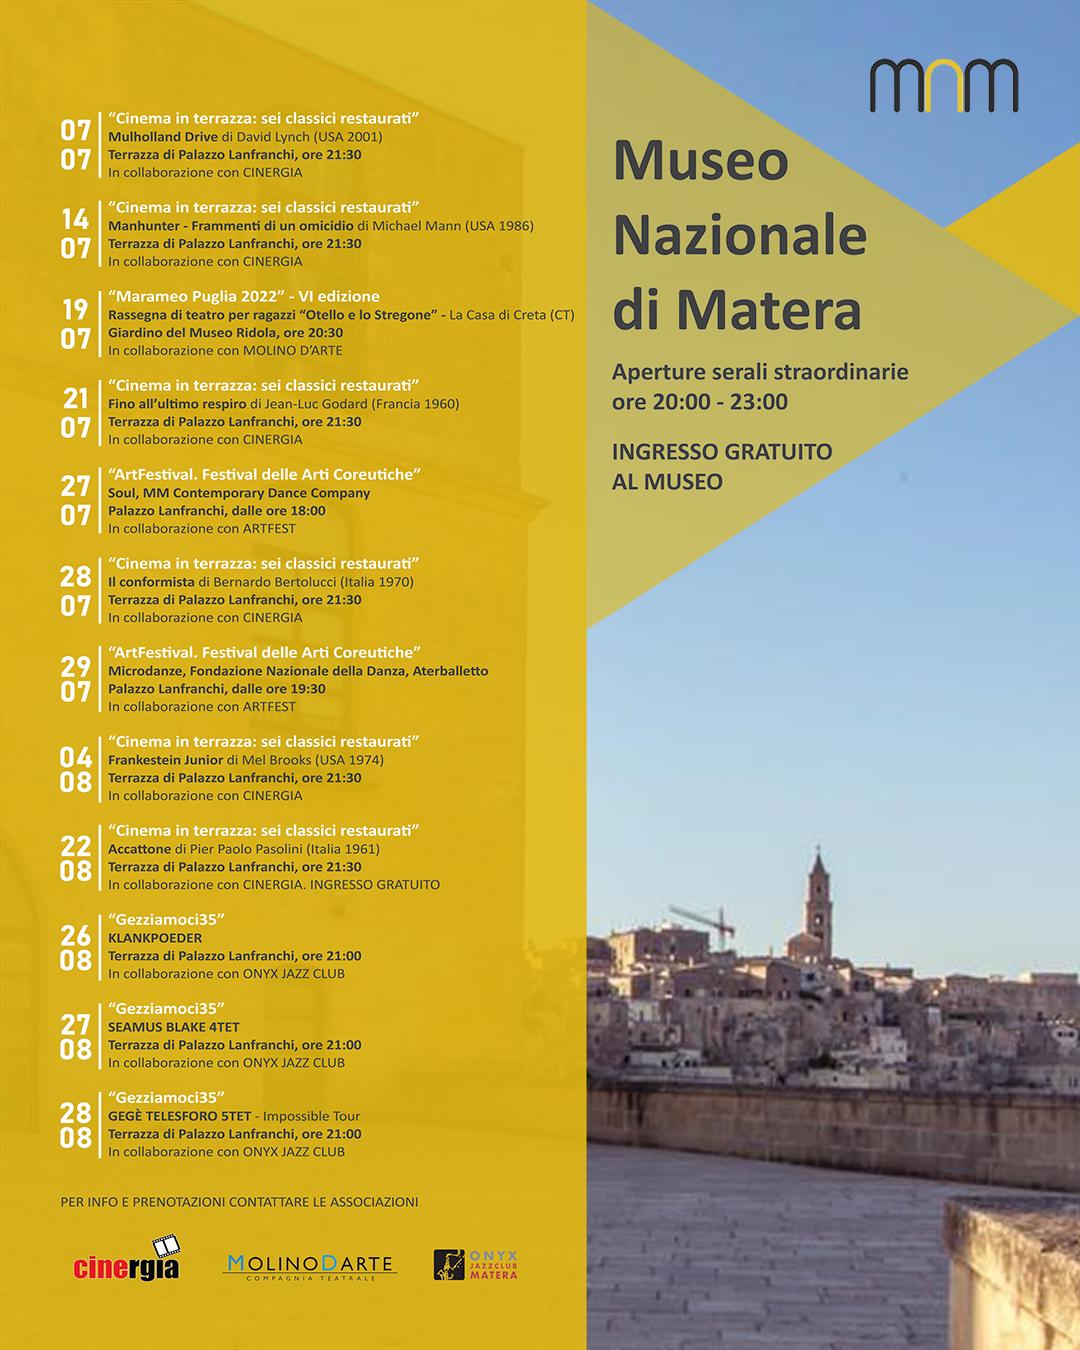 Aperture serali straordinarie del Museo Nazionale di Matera a Luglio e Agosto